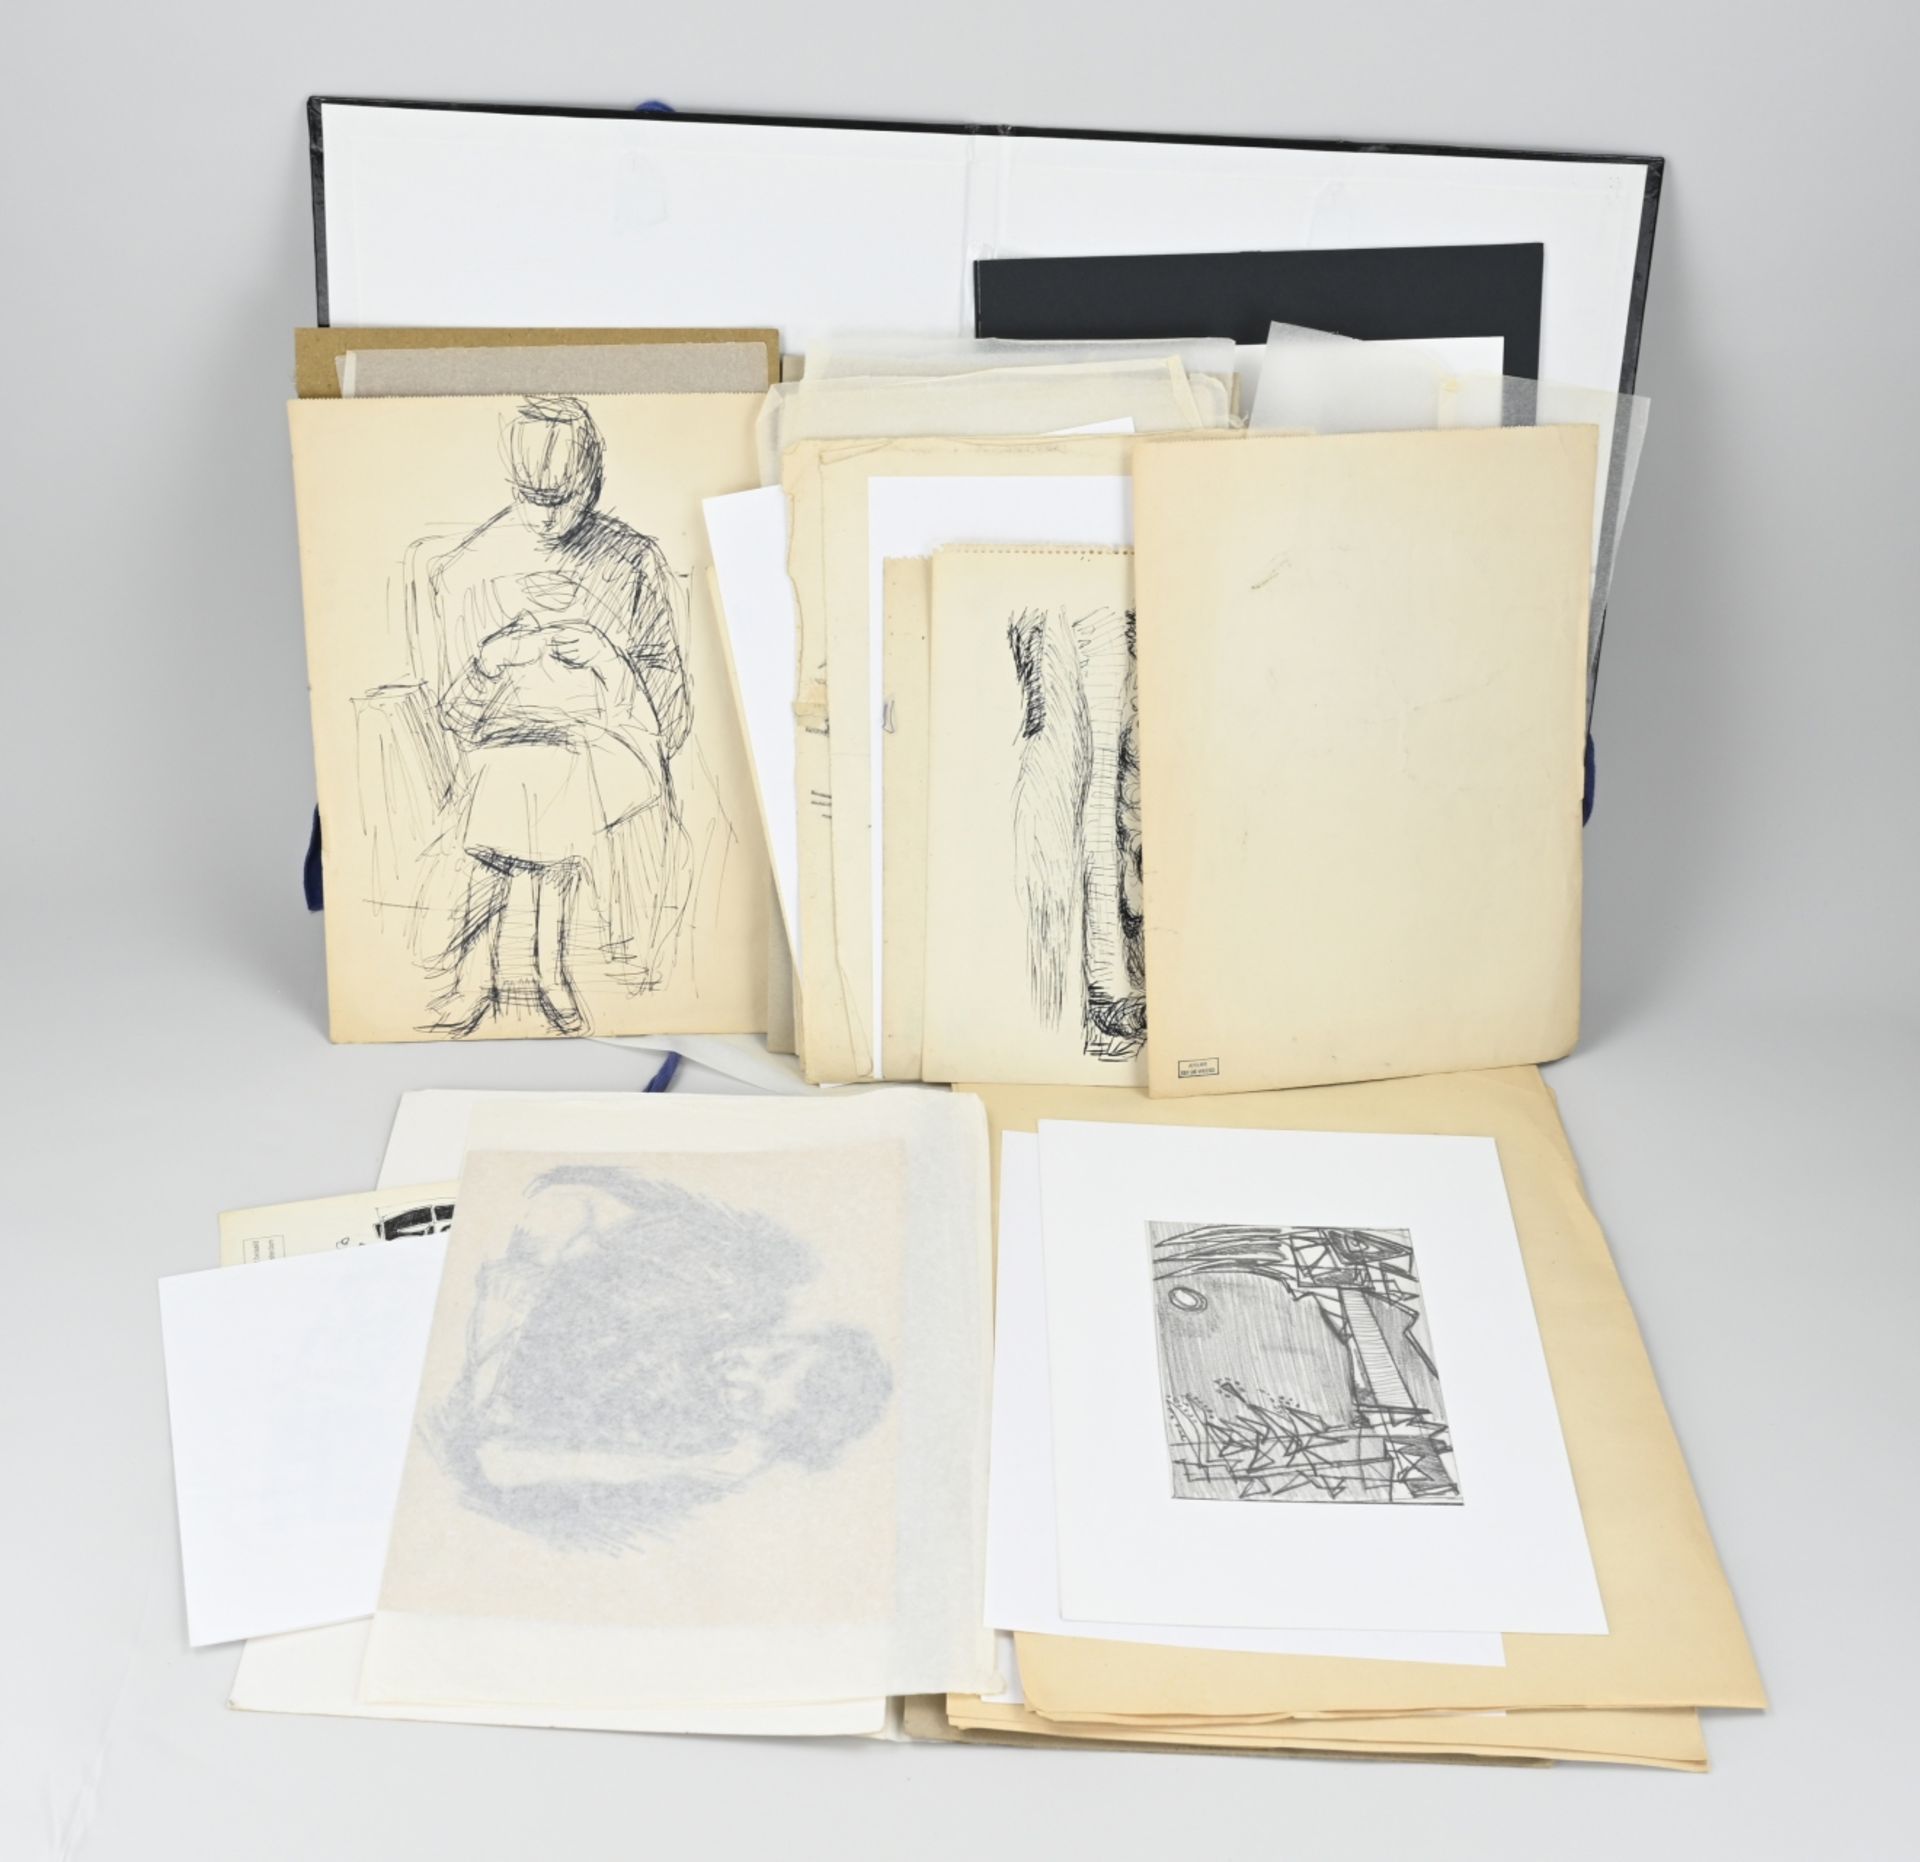 Eef de Weerd, Folder with various works